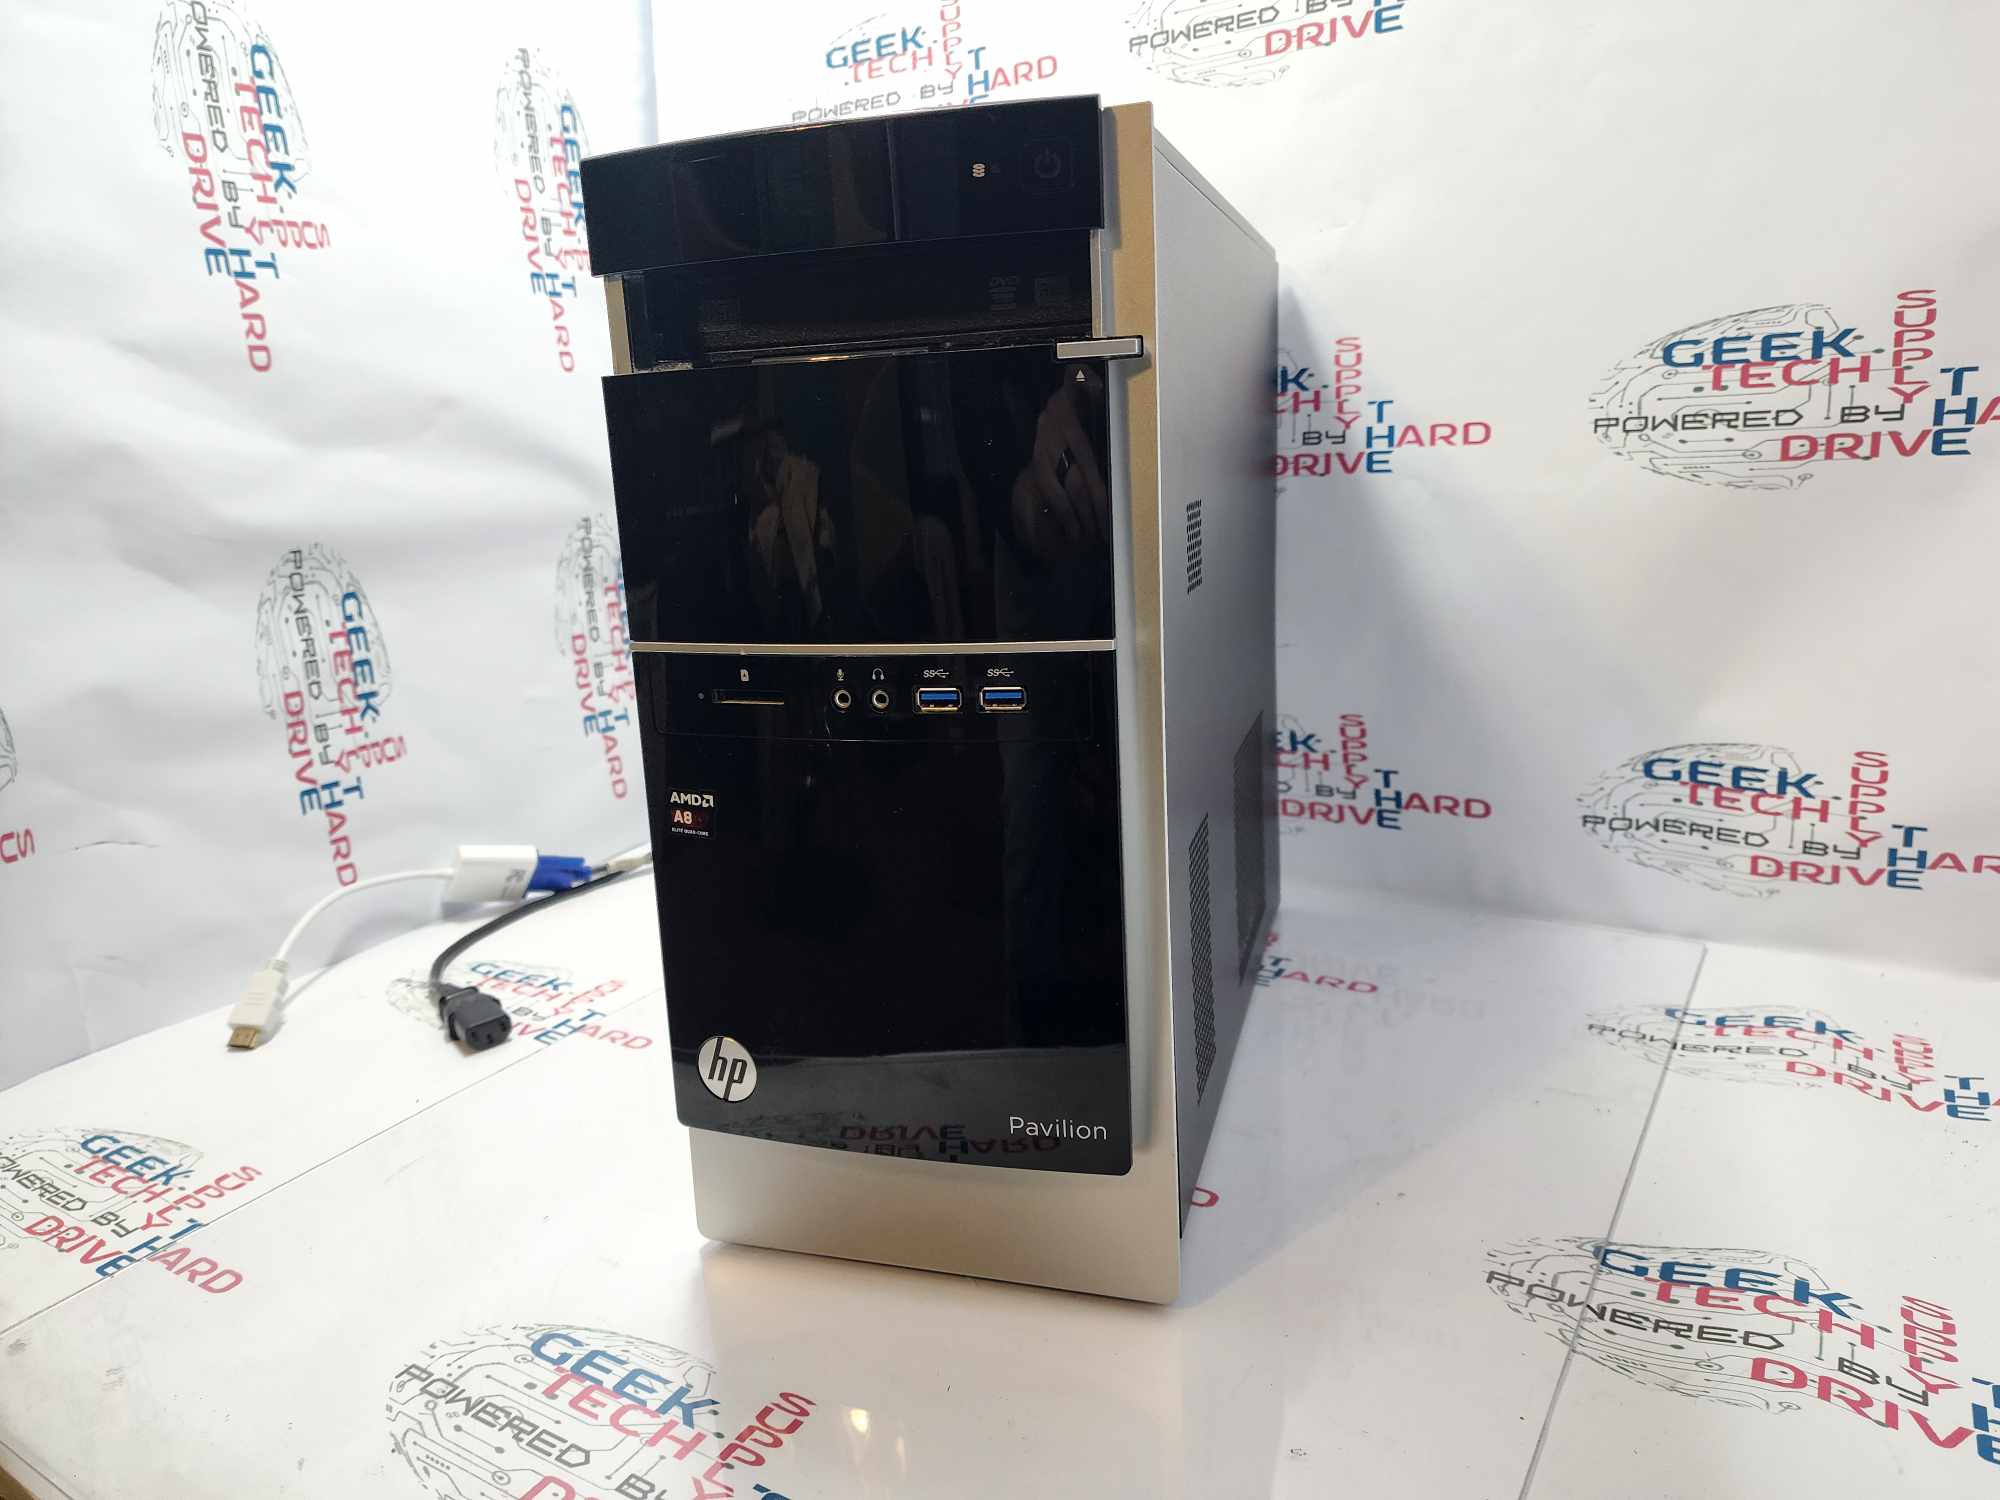 HP Pavilion 500-056 Desktop PC A8-6500 256GB SSD 8GB RAM Black - Geek Tech